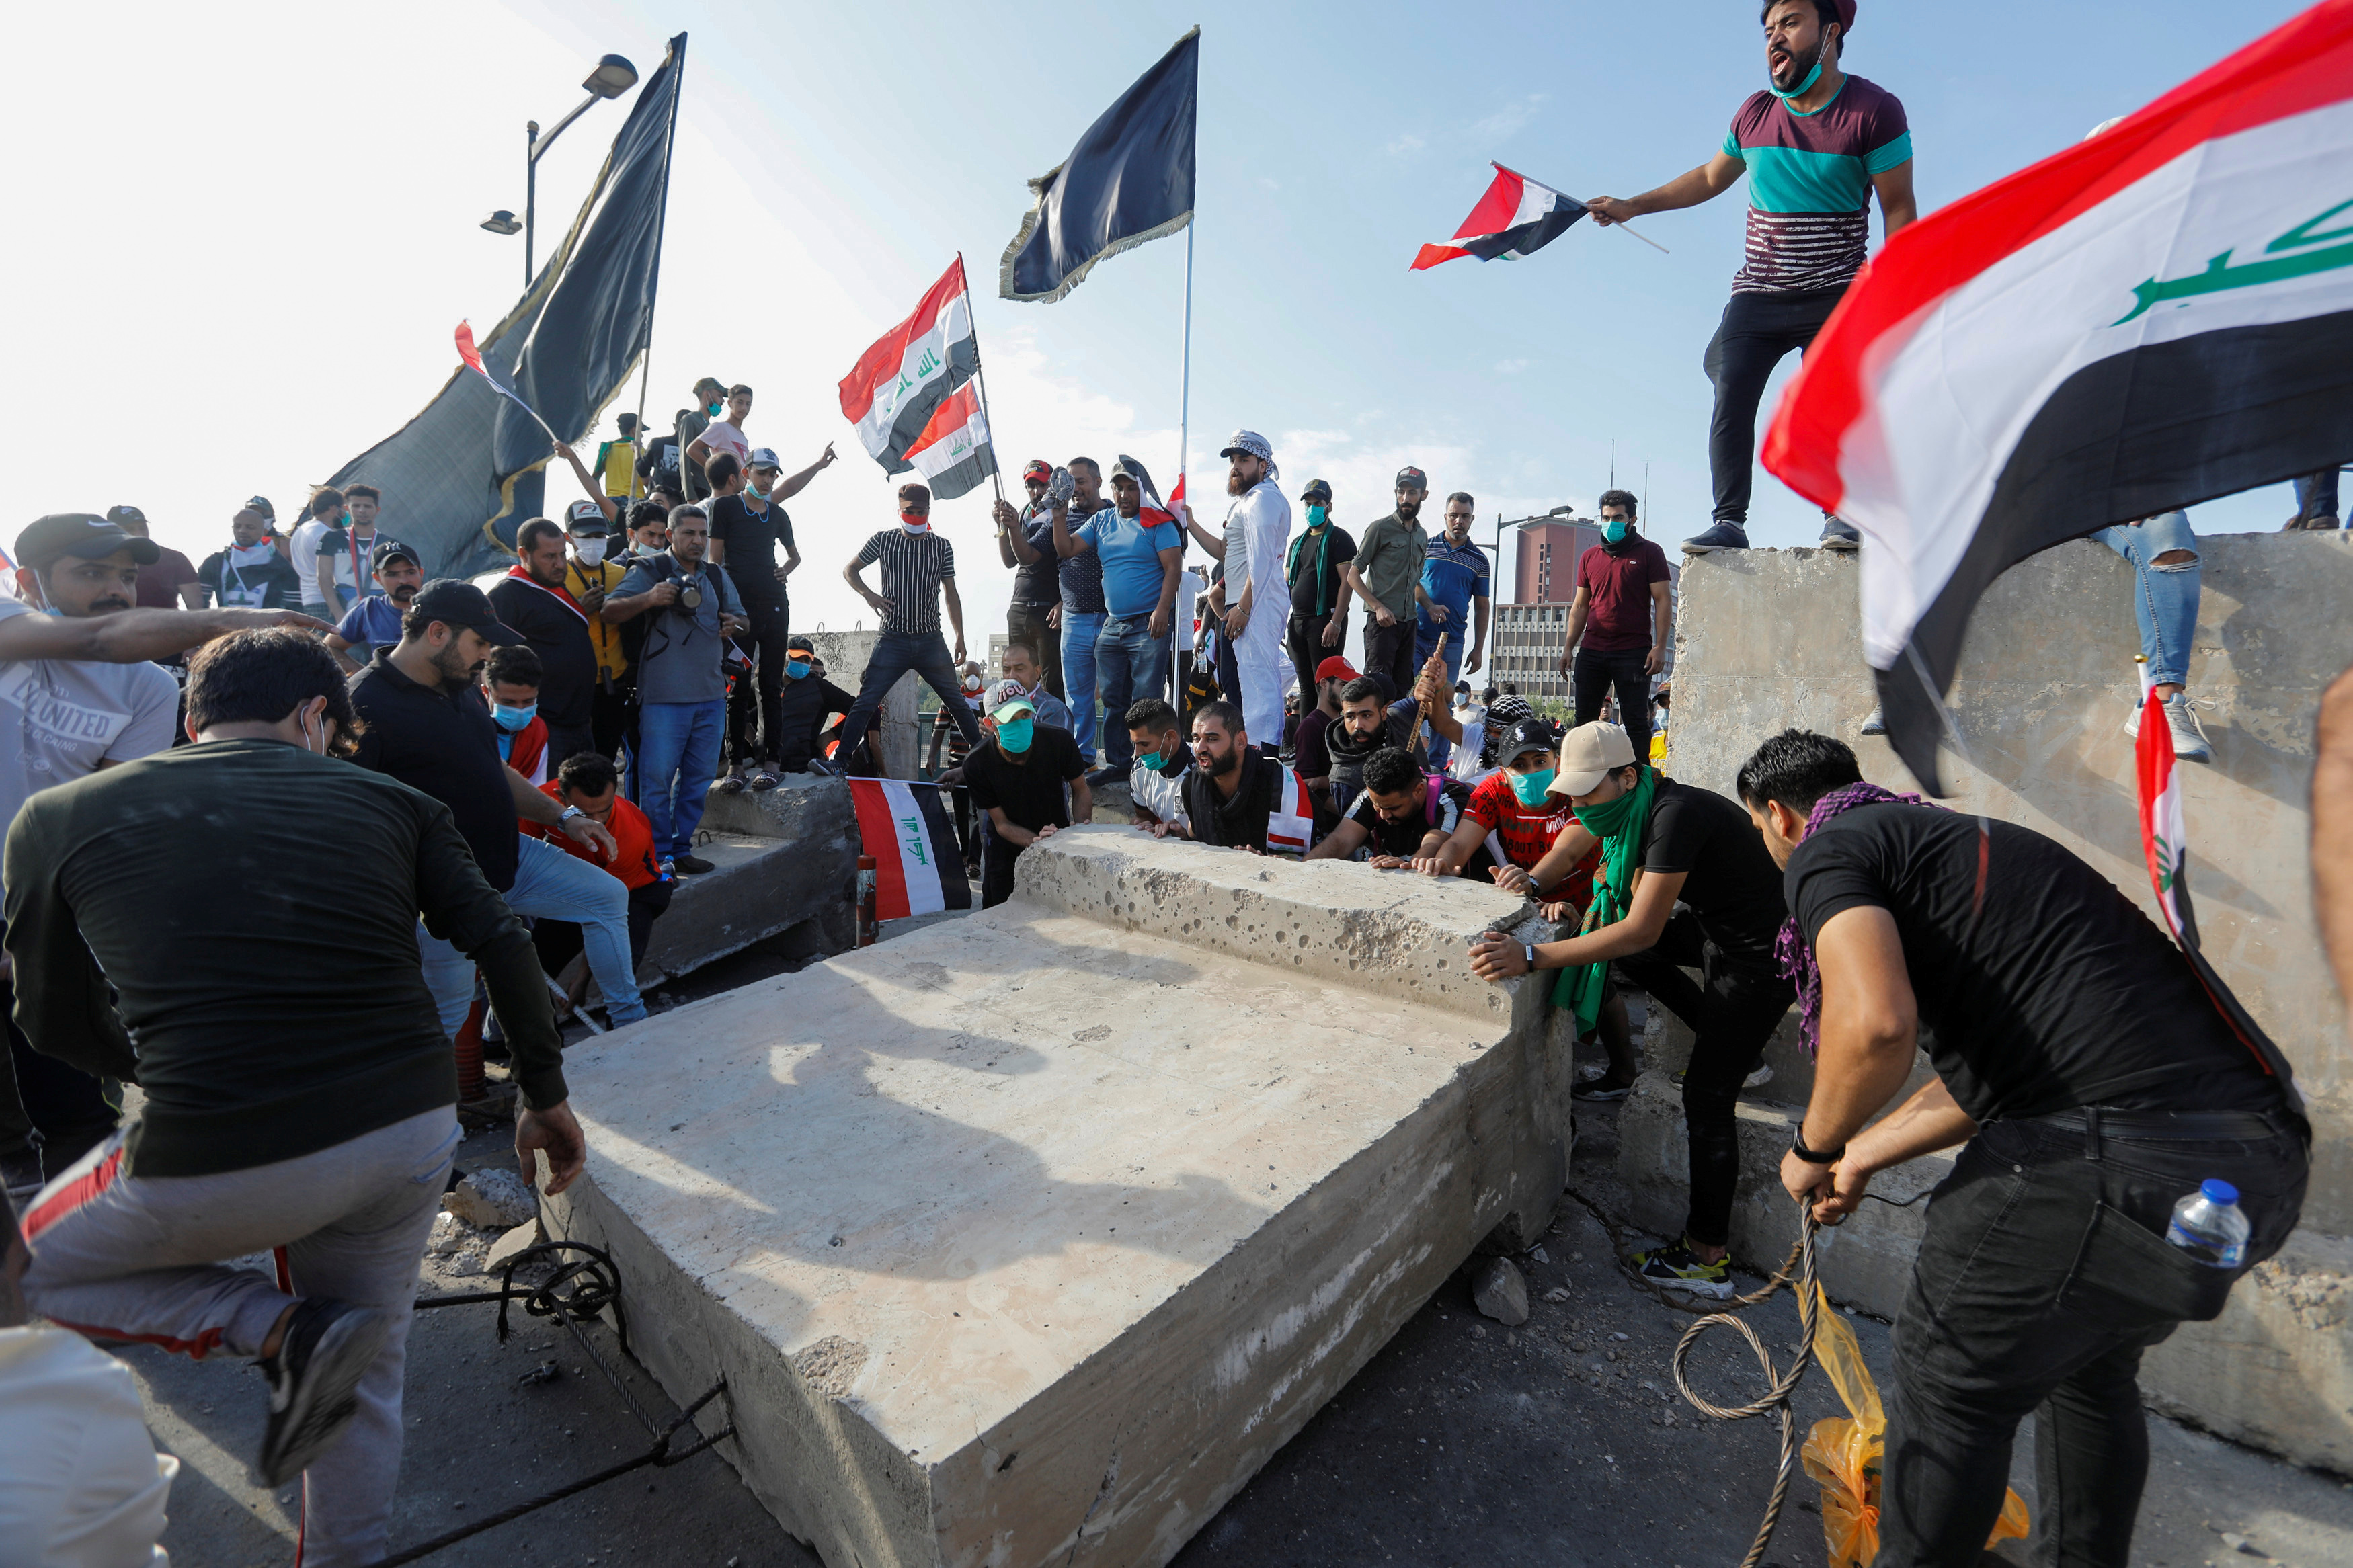 الاحتجاجات العراقية